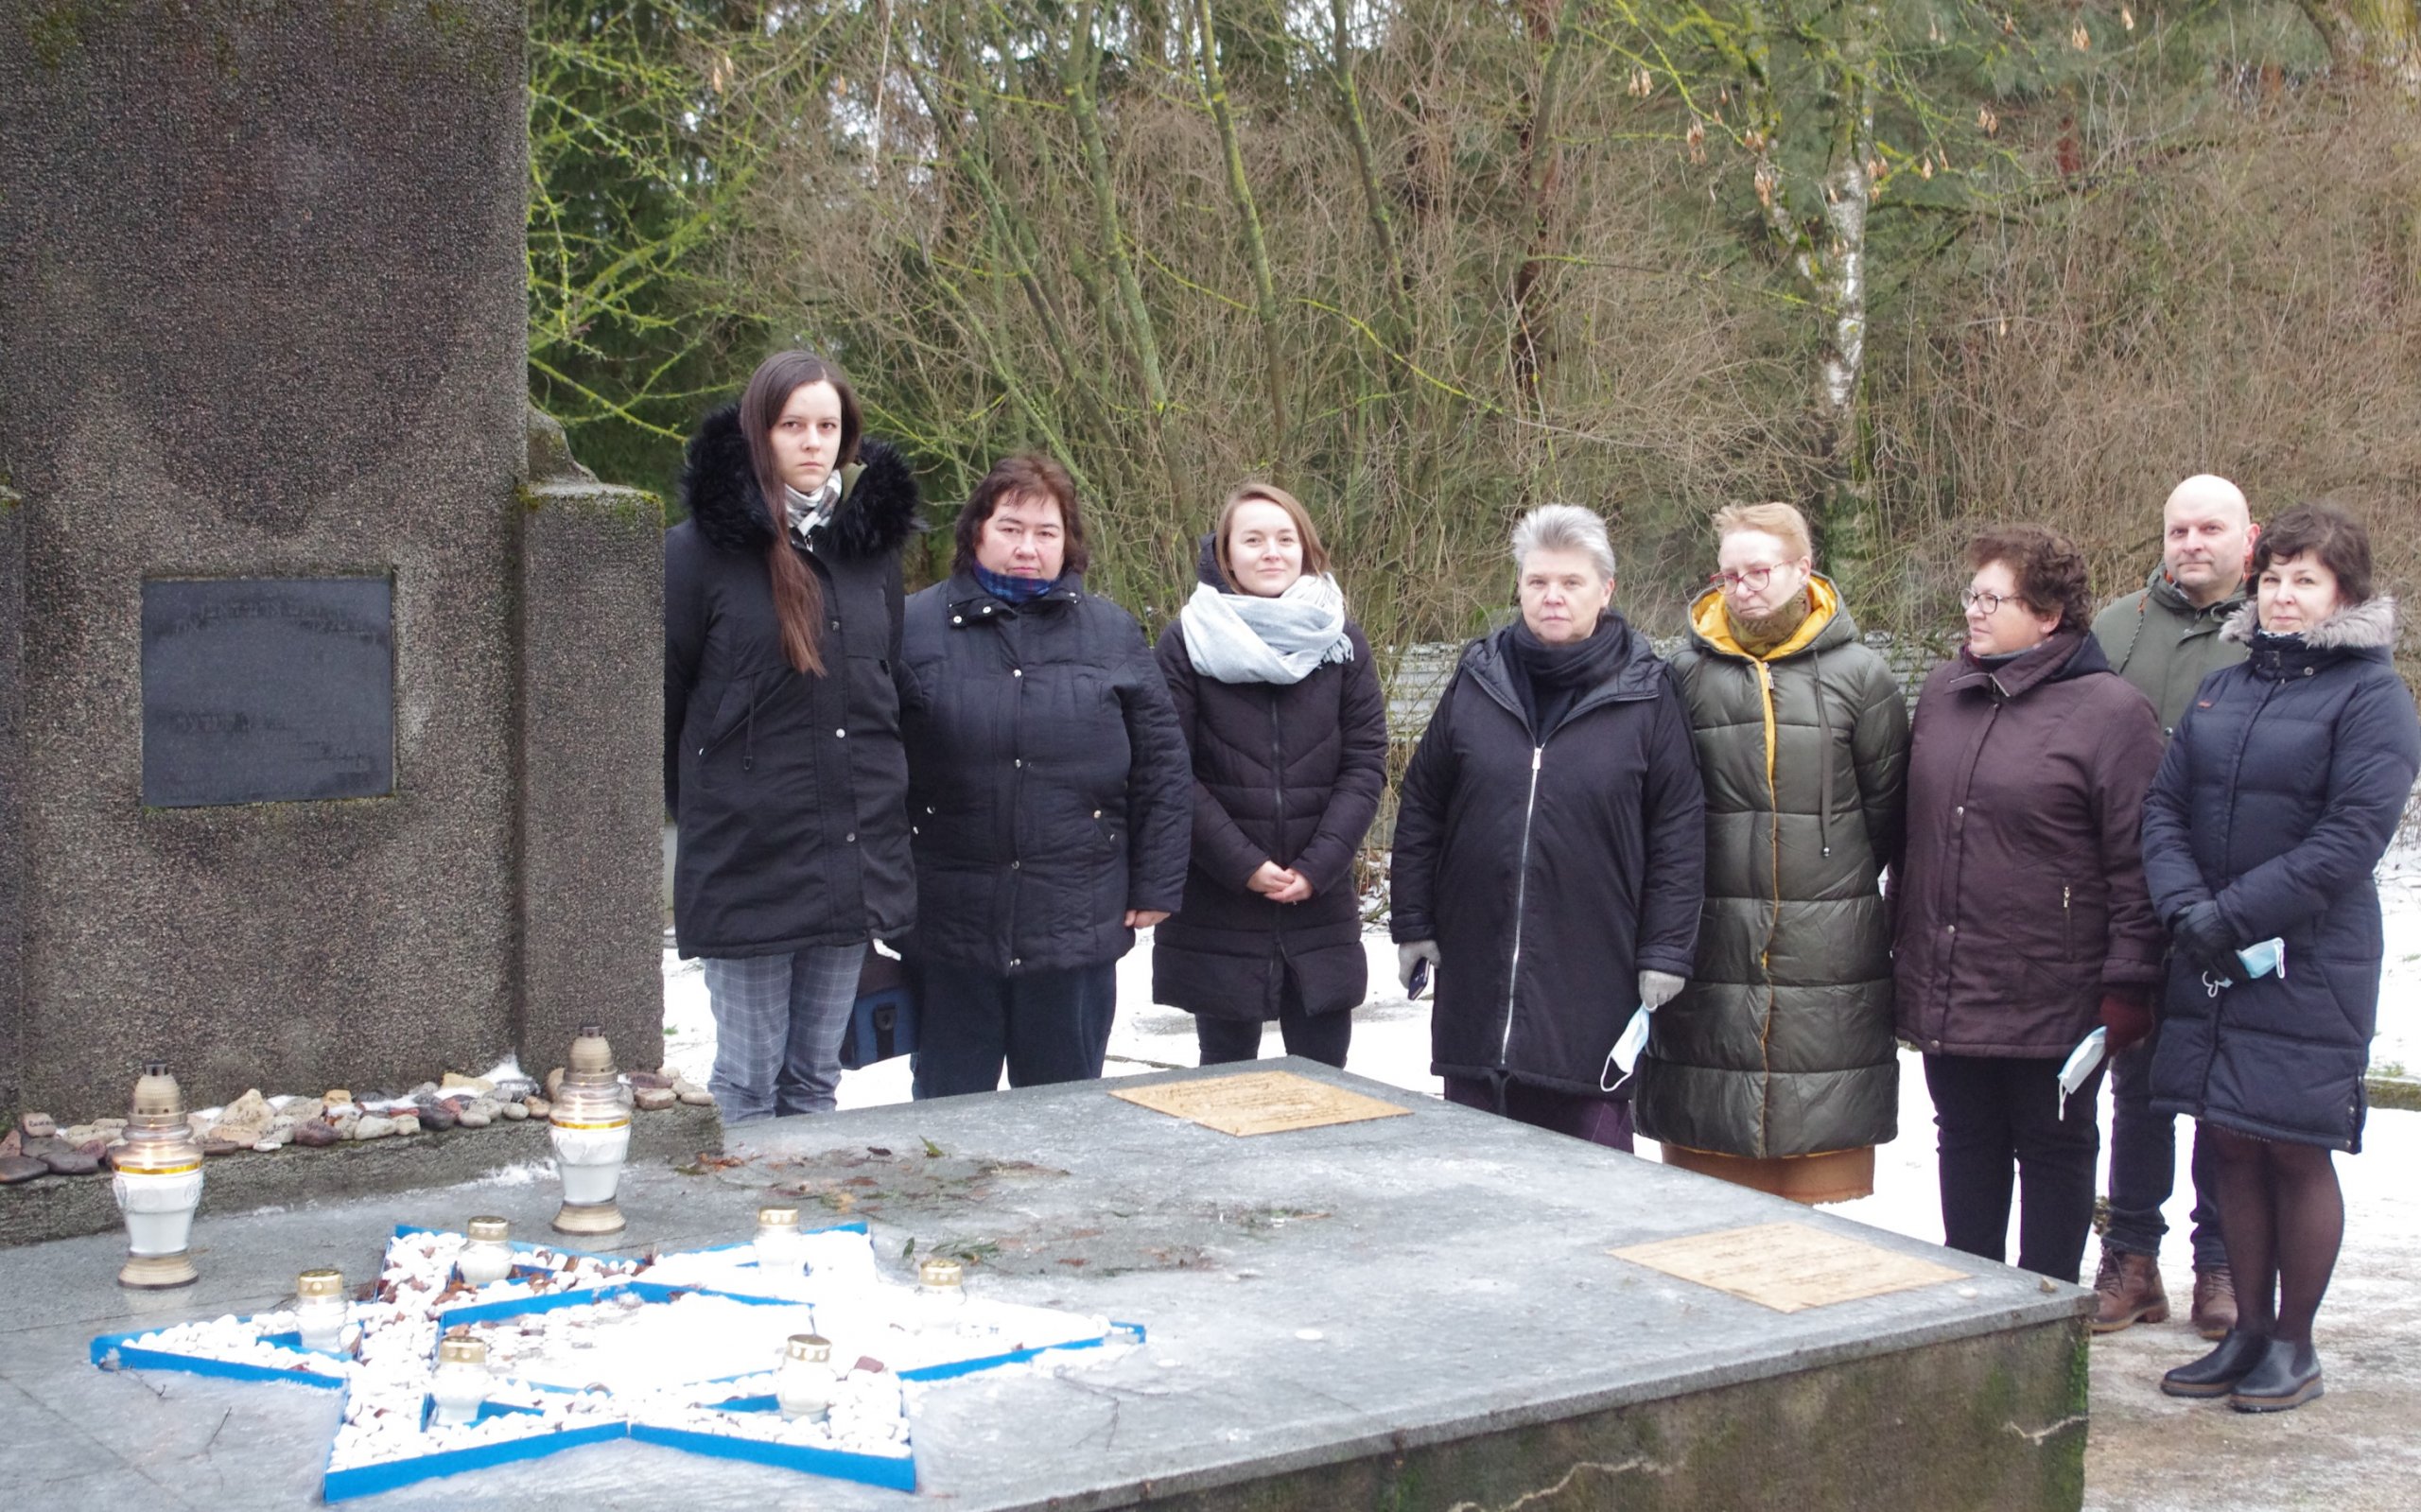 Kupiškio etnografijos muziejaus darbuotojai pagerbė 1941 m. Holokausto aukas ir uždegė žvakutes Laisvamanių kapinėse.